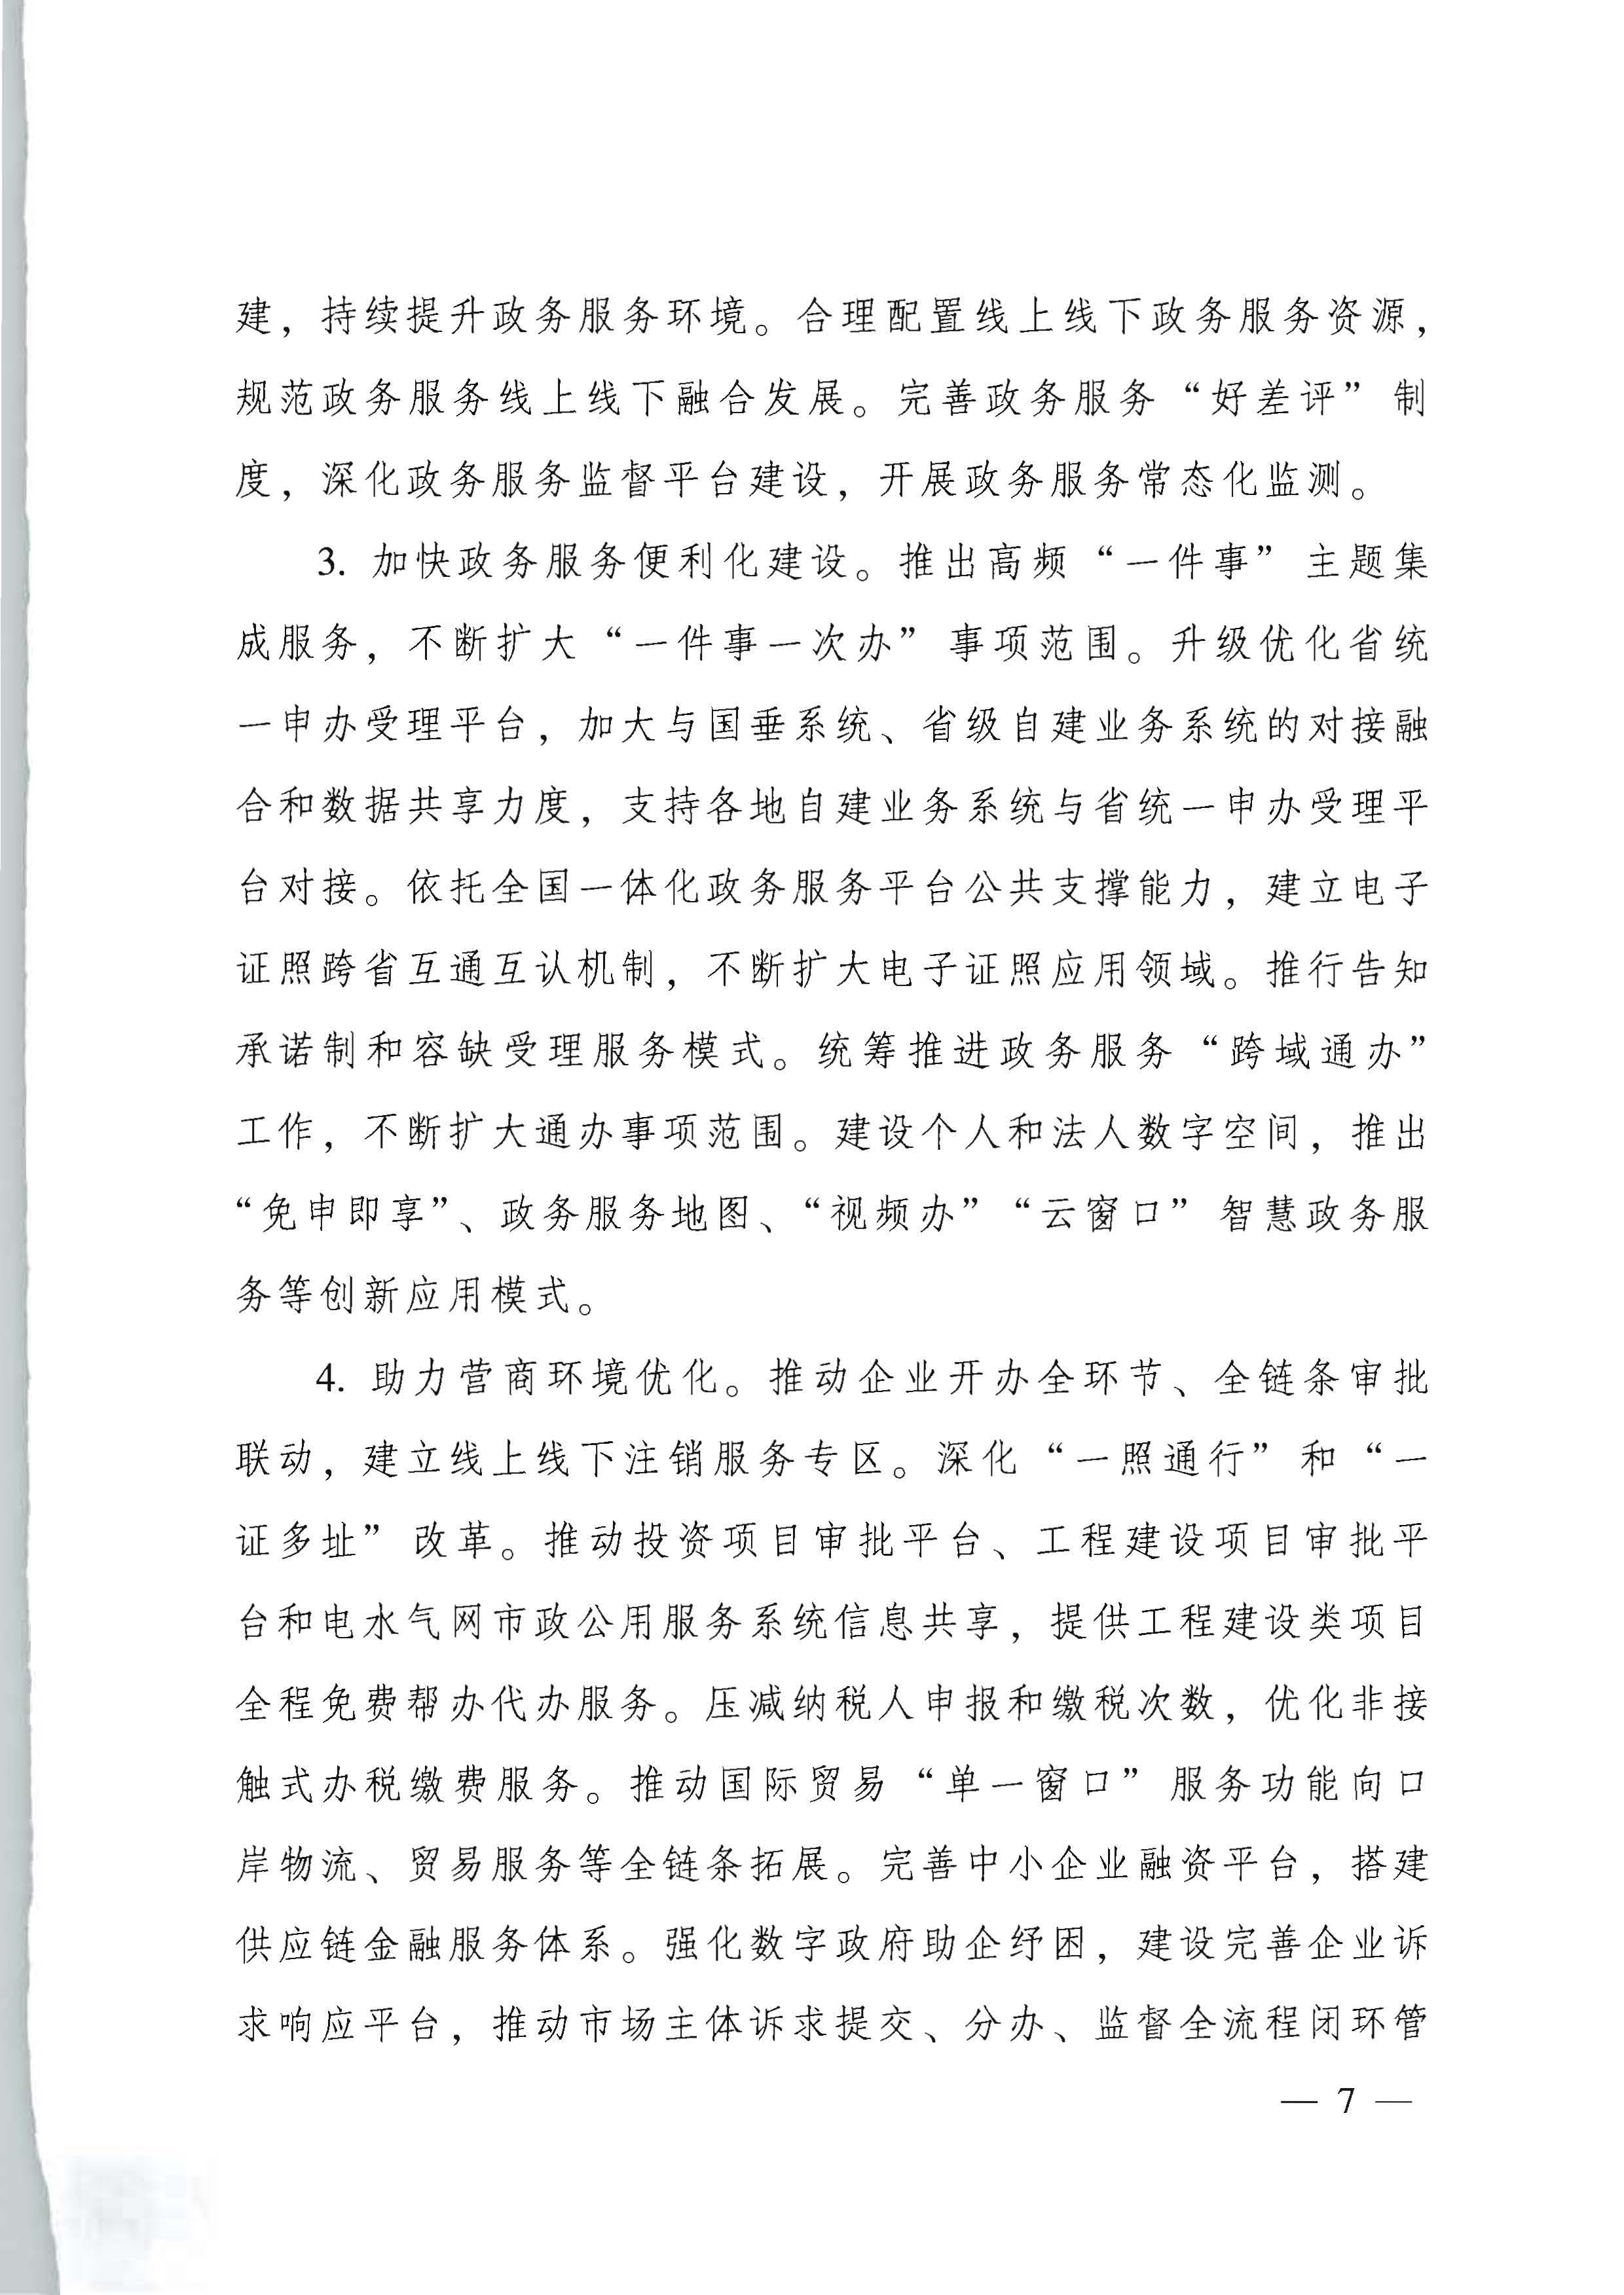 广东省人民政府关于进一步深化数字政府改革建设的实施意见_页面_07.jpg